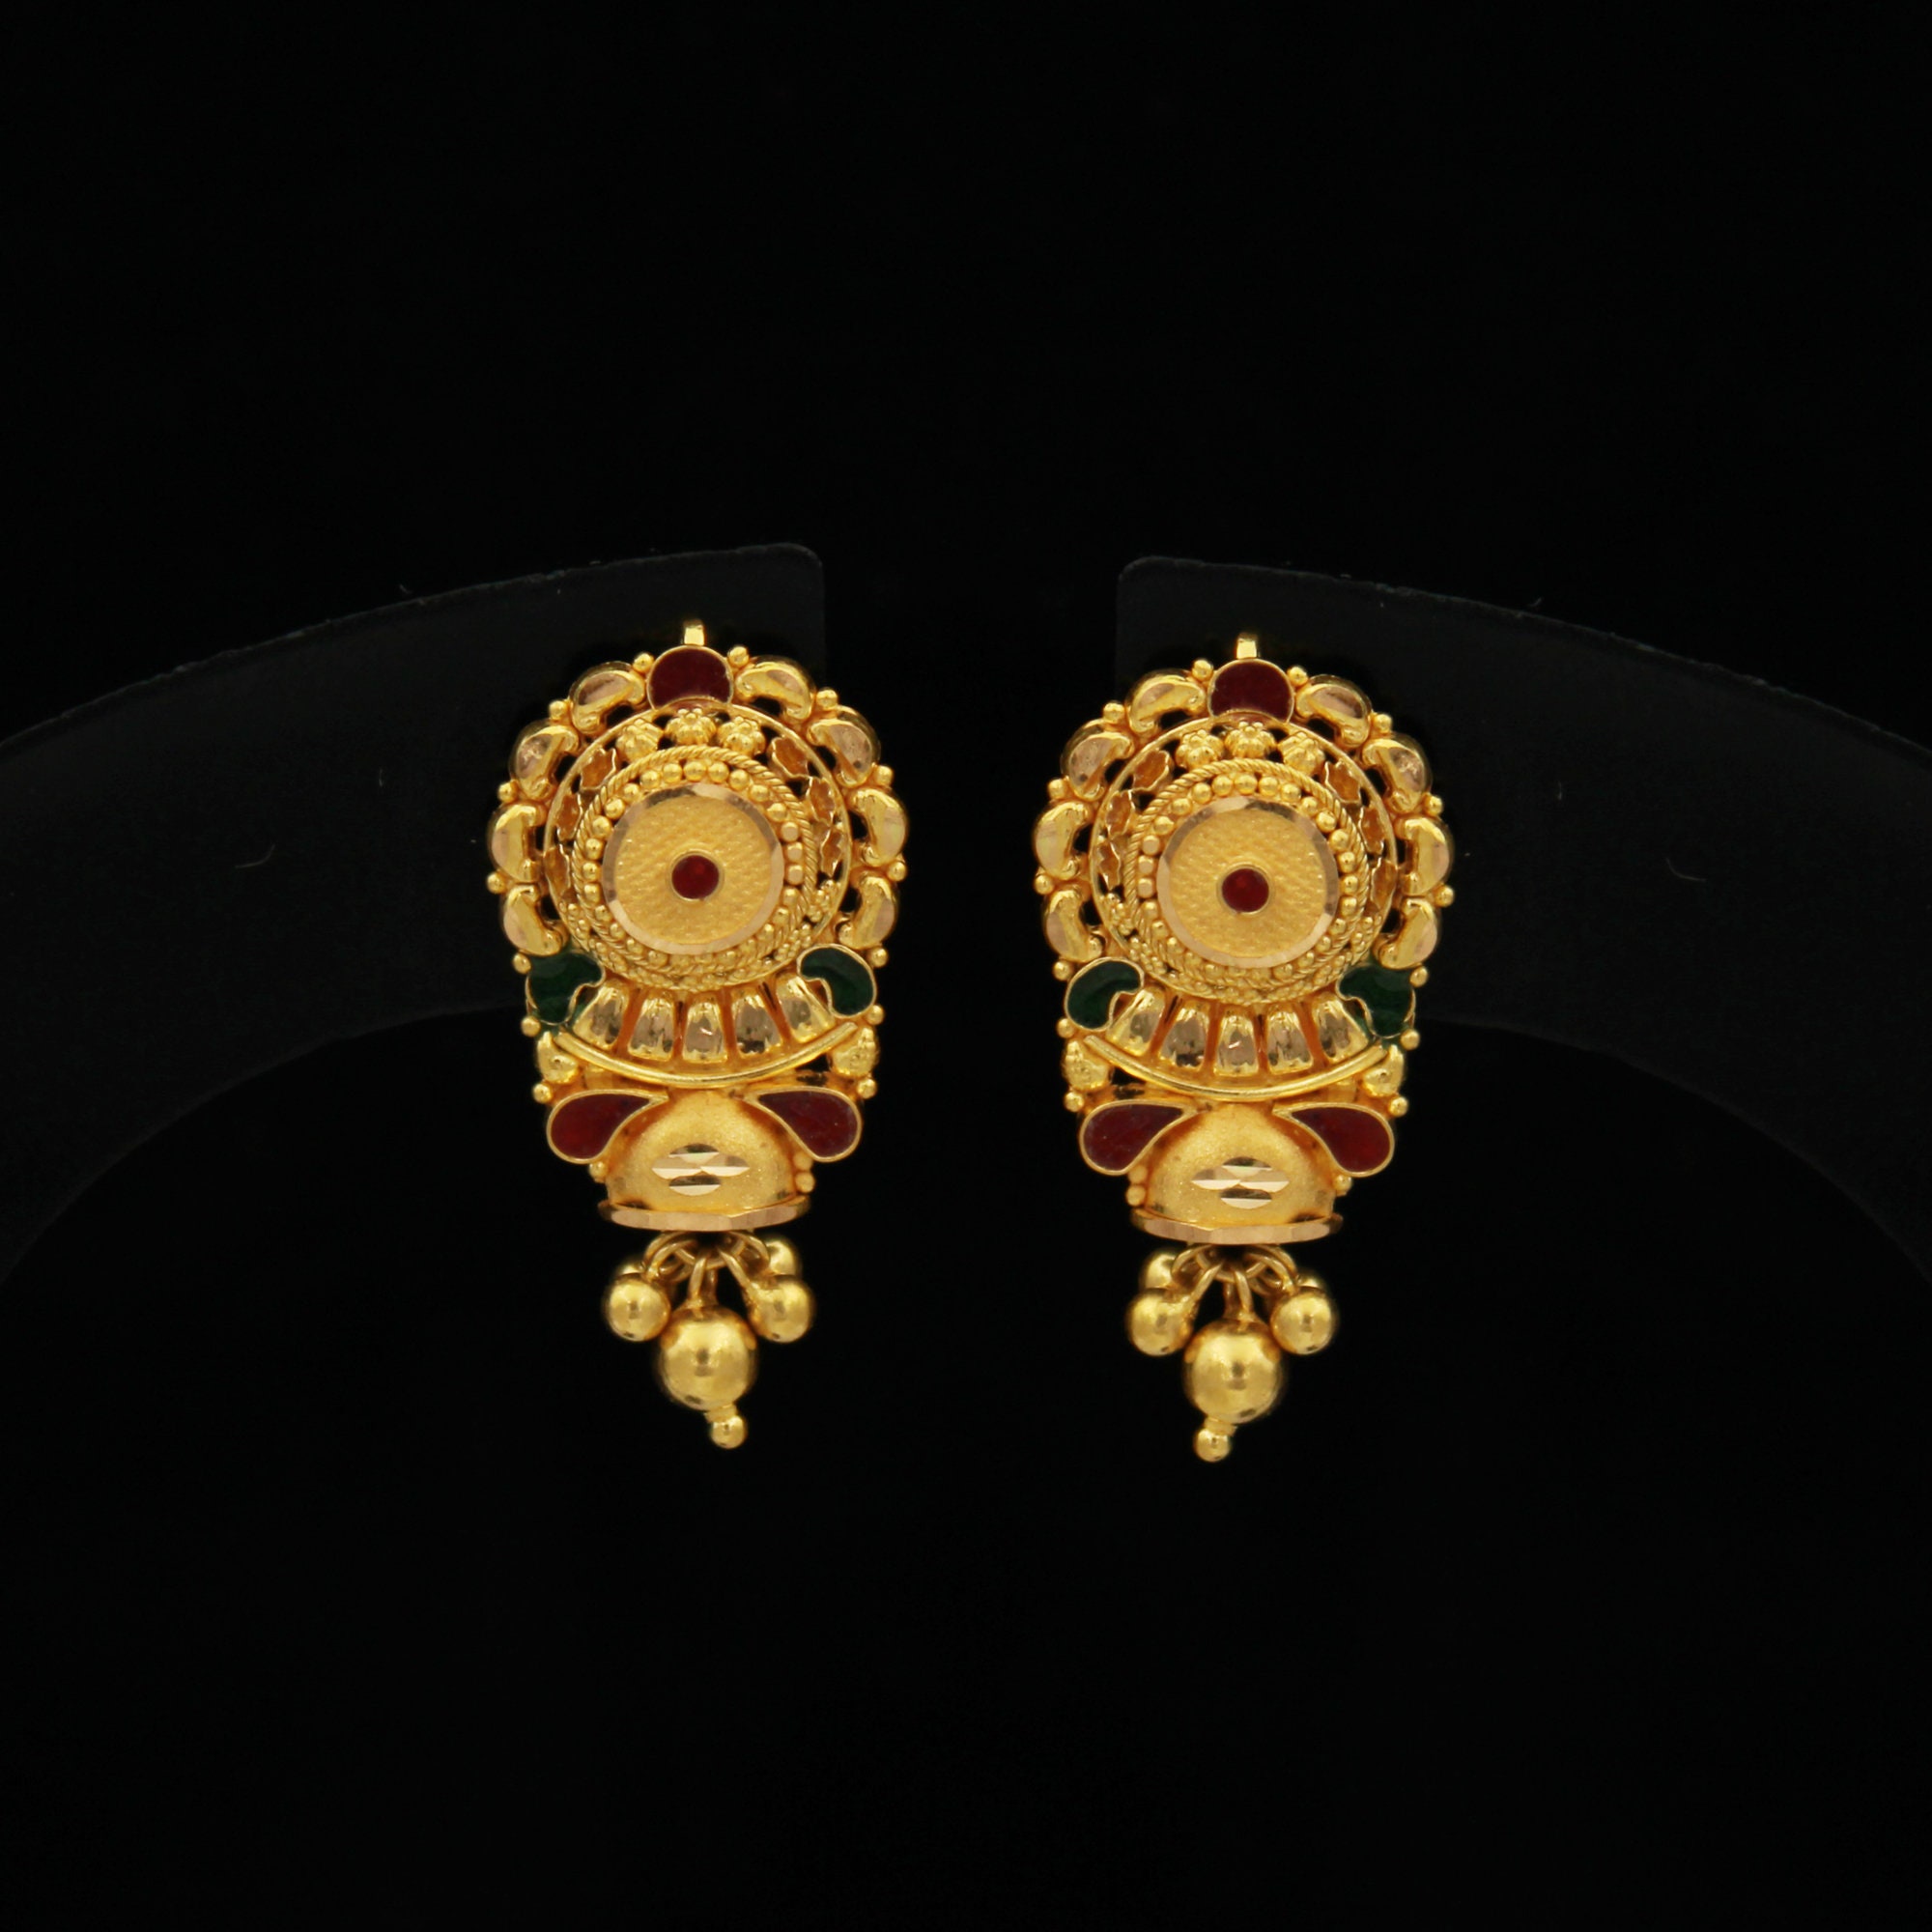 Rajputi Gold Earrings Designs 2022 | राजपूती चांद बाला की डिजाइन | सोने की  बाला जोड़ी – पत्ता जोड़ी की डिजाइन - Uprising Bihar